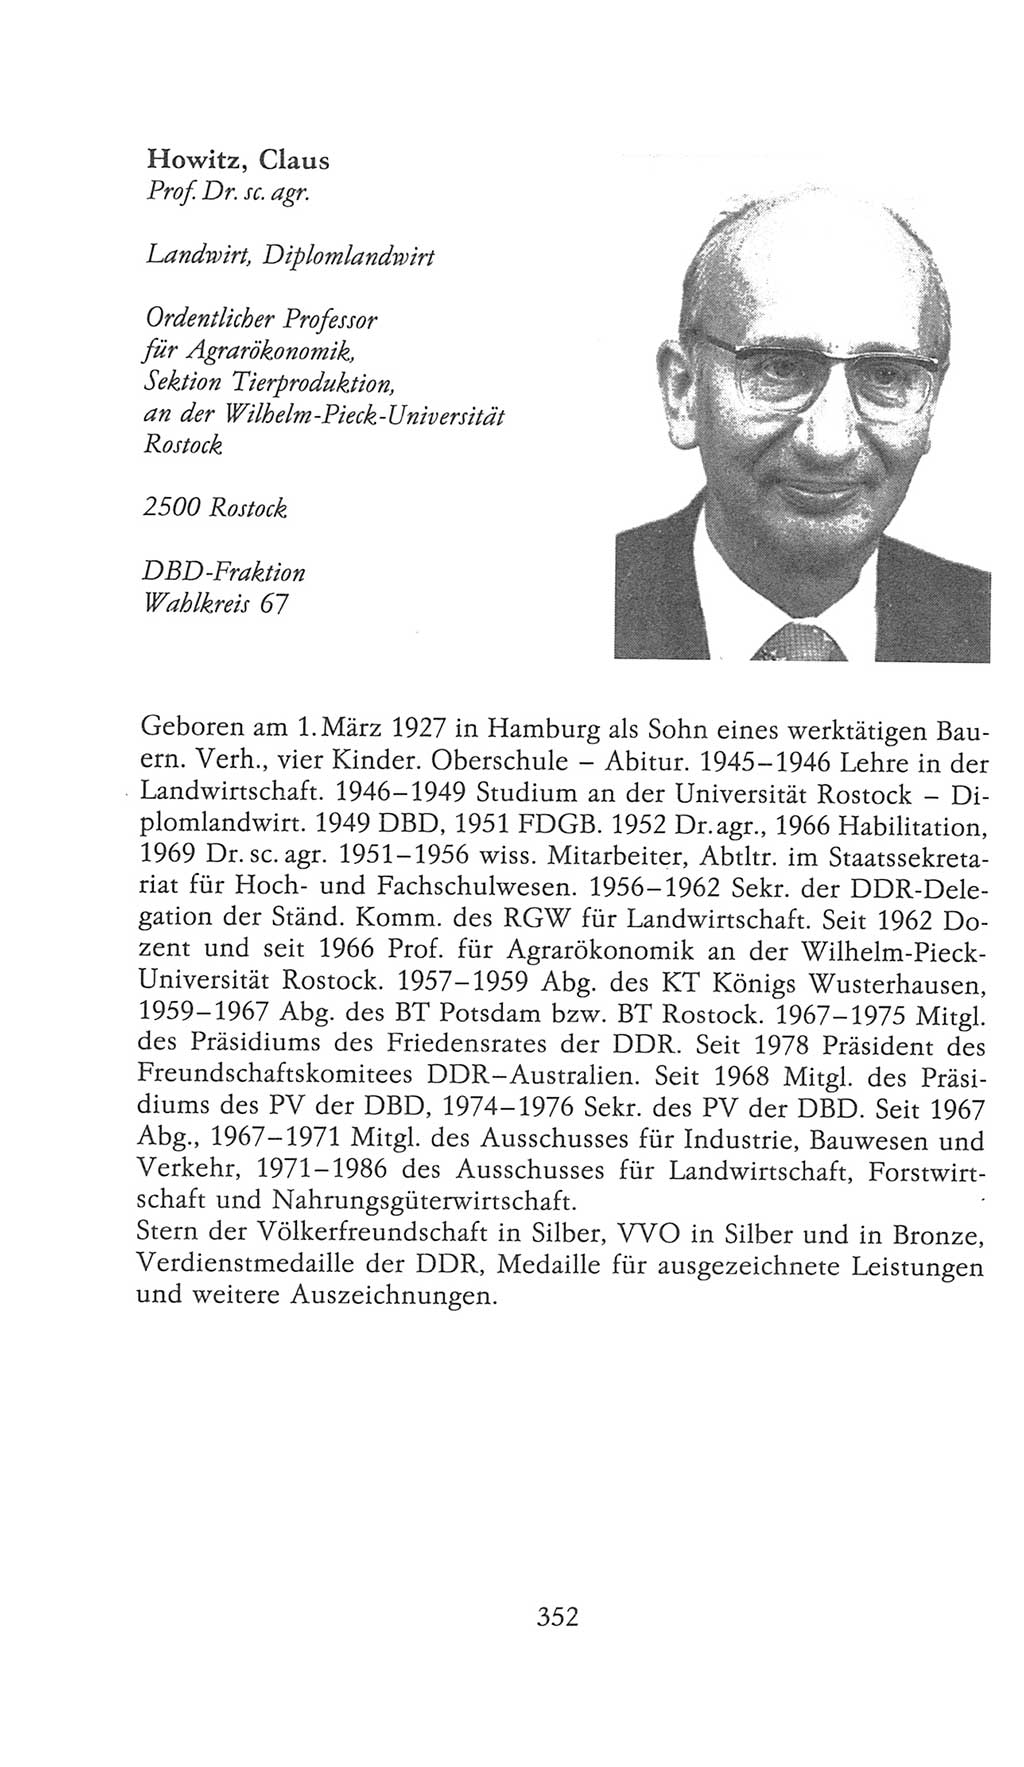 Volkskammer (VK) der Deutschen Demokratischen Republik (DDR), 9. Wahlperiode 1986-1990, Seite 352 (VK. DDR 9. WP. 1986-1990, S. 352)